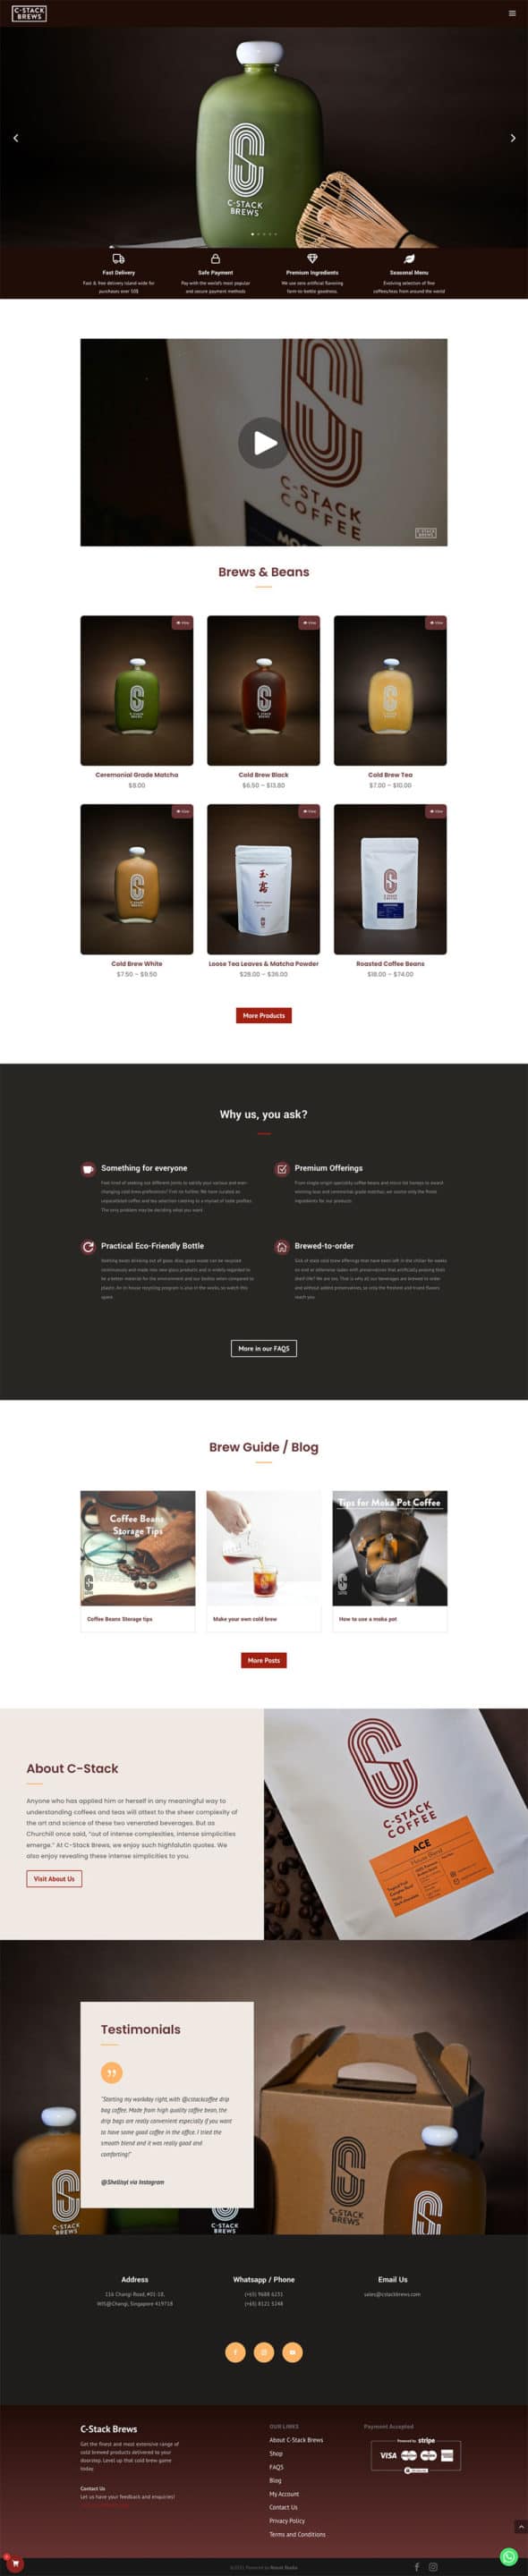 food and beverage web design